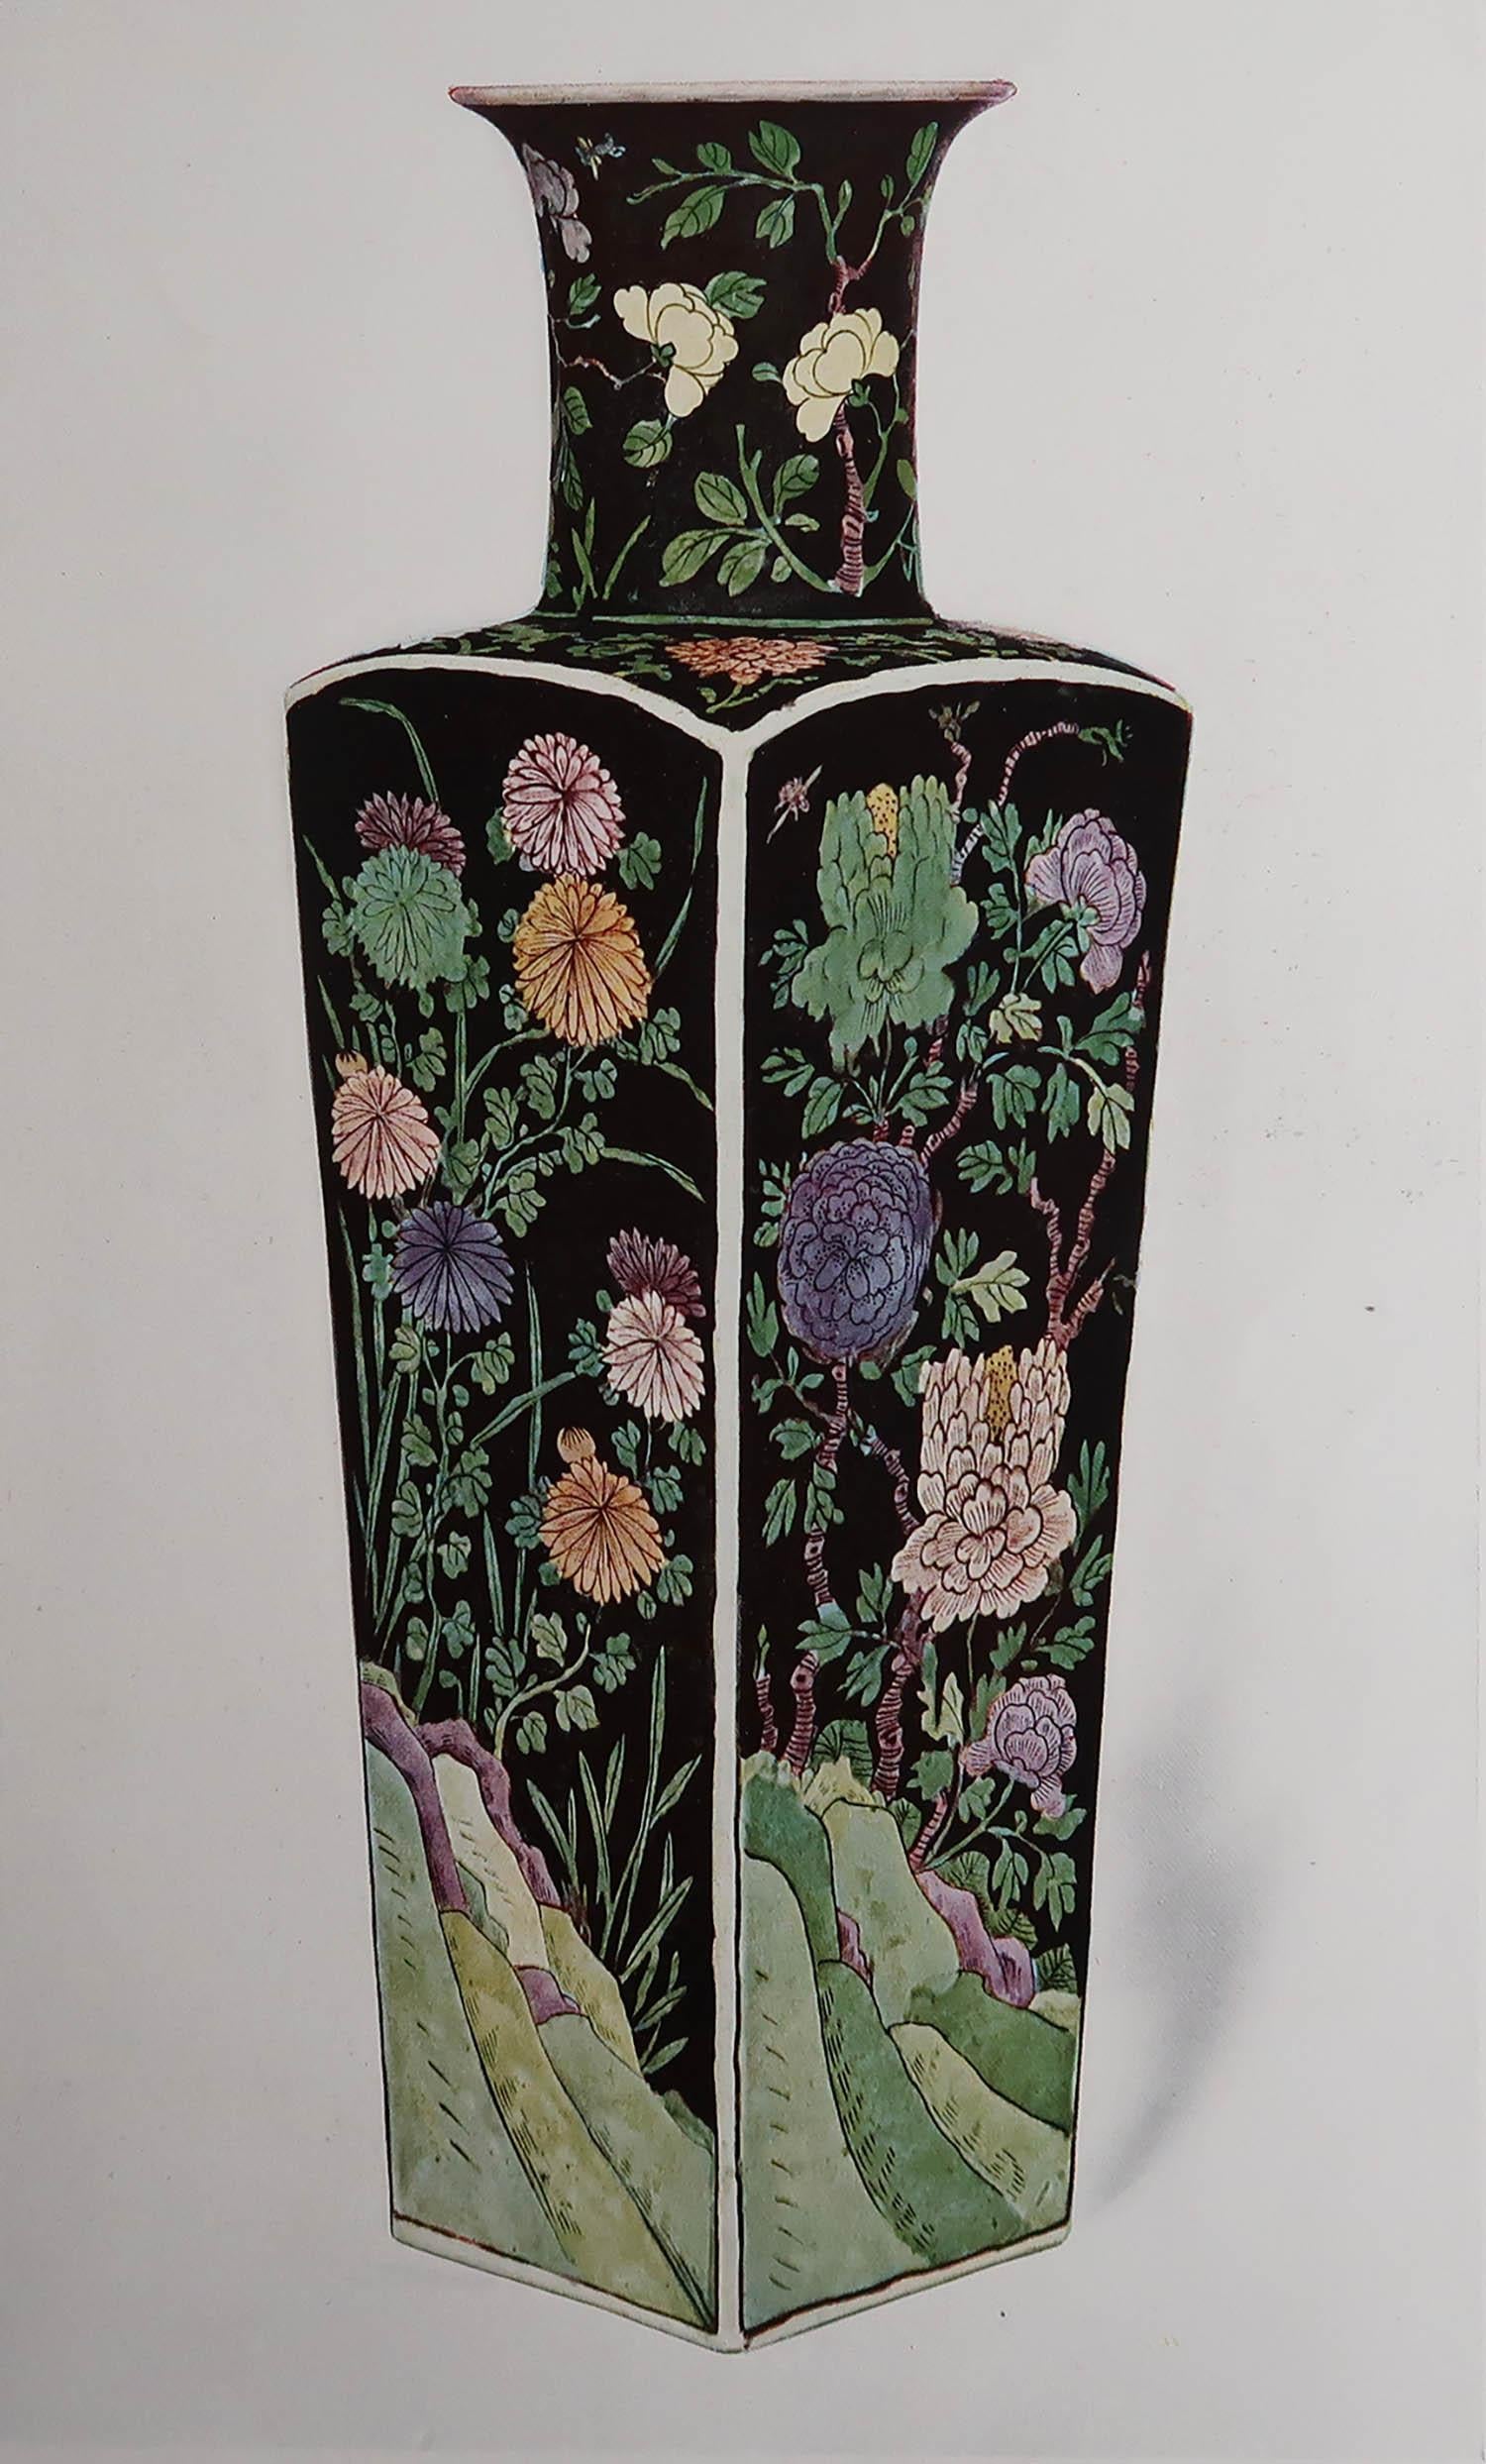 Magnifique impression d'un vase chinois de la famille noire.

Jolies couleurs.

Chromolithographie 

Publié par Connoisseur, vers 1900

Non encadré.

